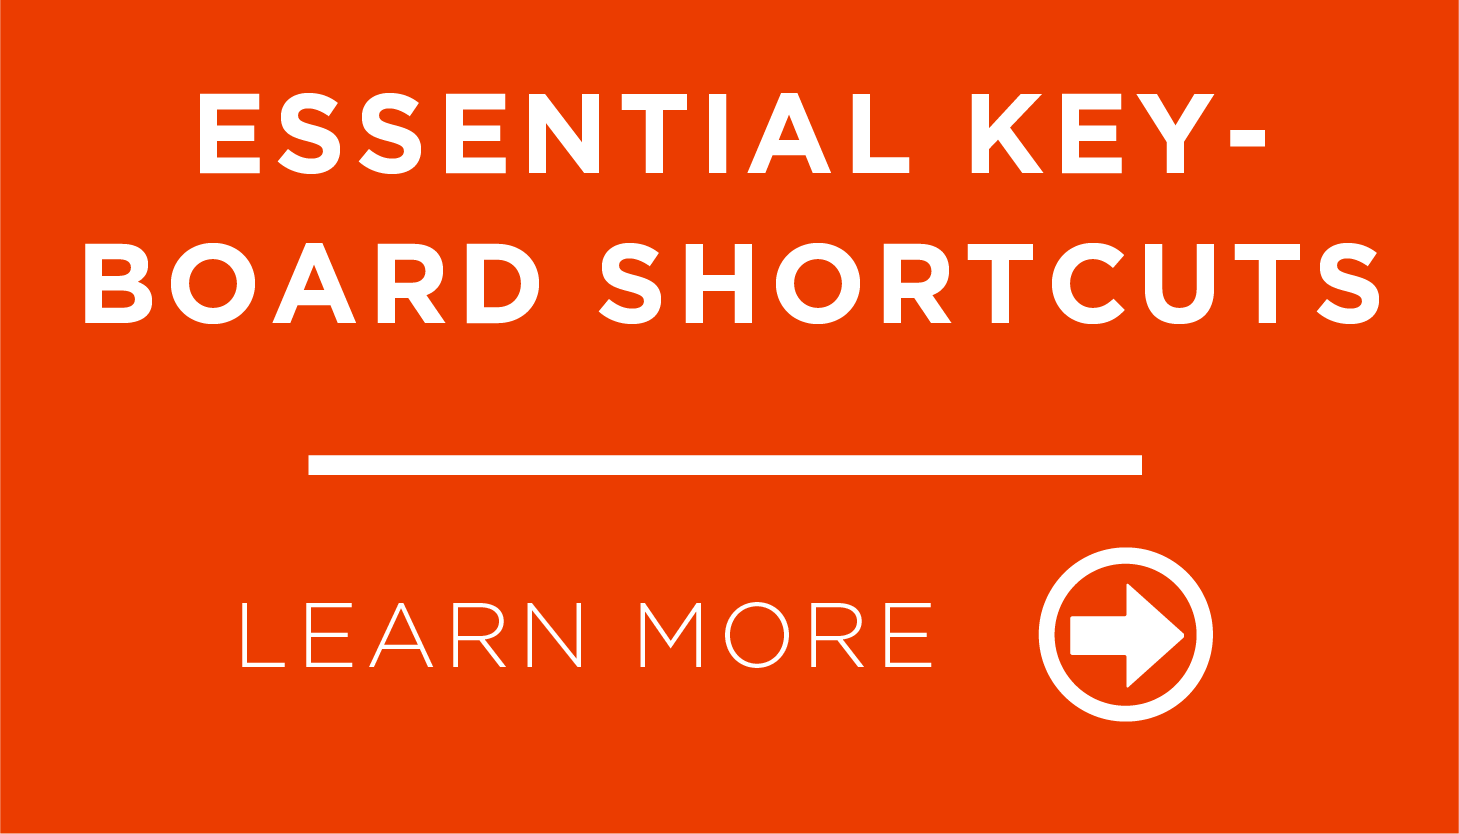 Essential Keyboard Shortcuts